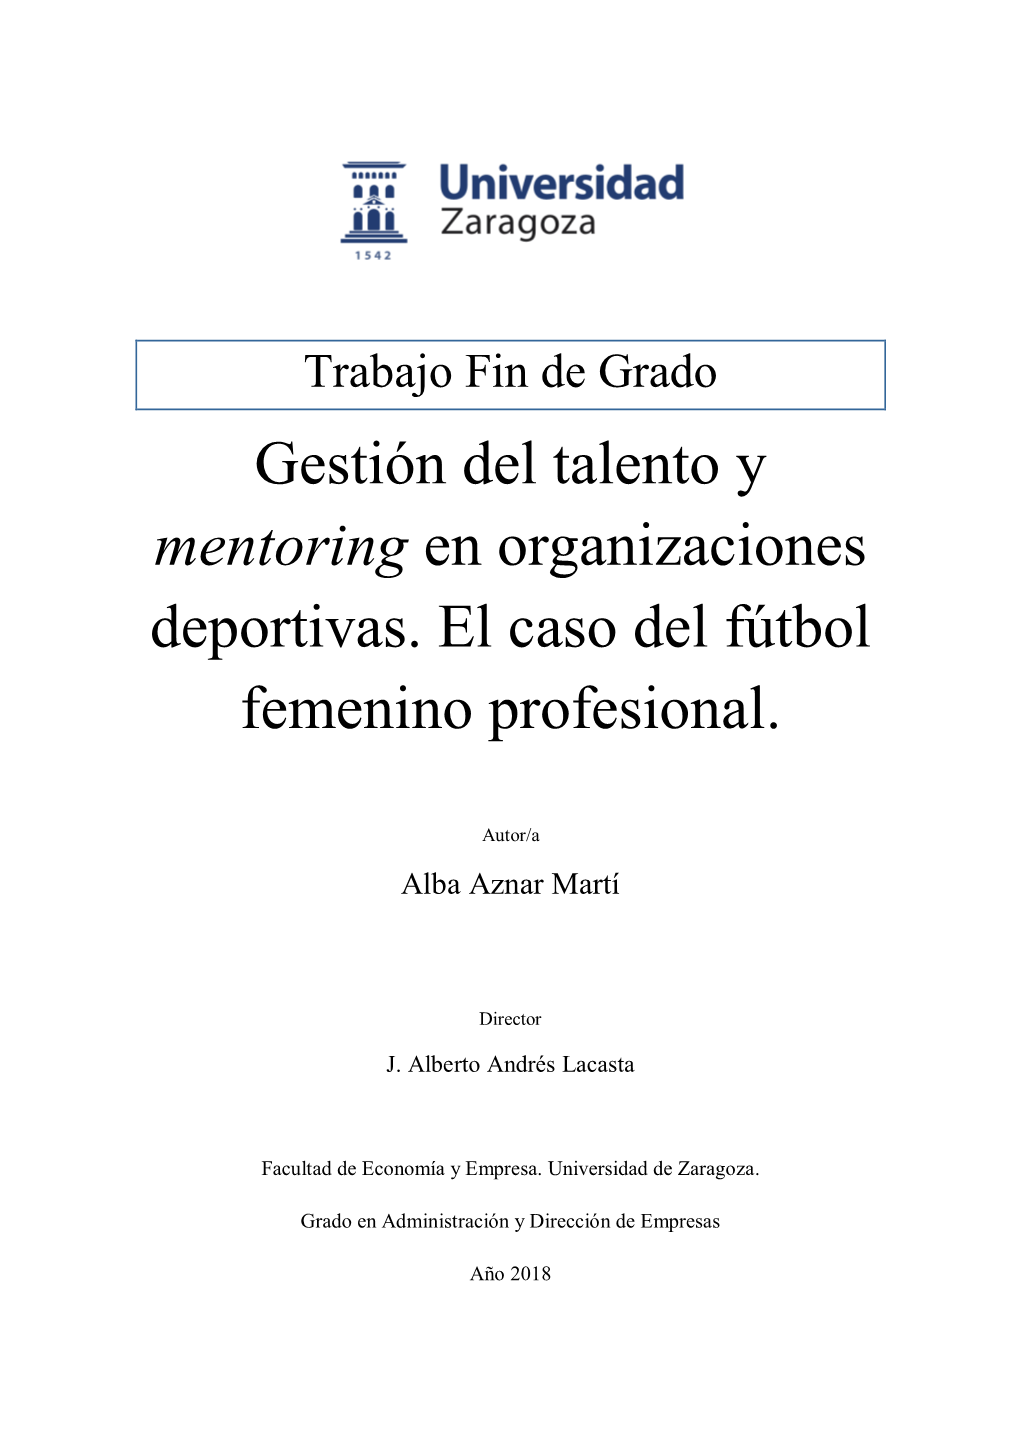 Gestión Del Talento Y Mentoring En Organizaciones Deportivas. El Caso Del Fútbol Femenino Profesional